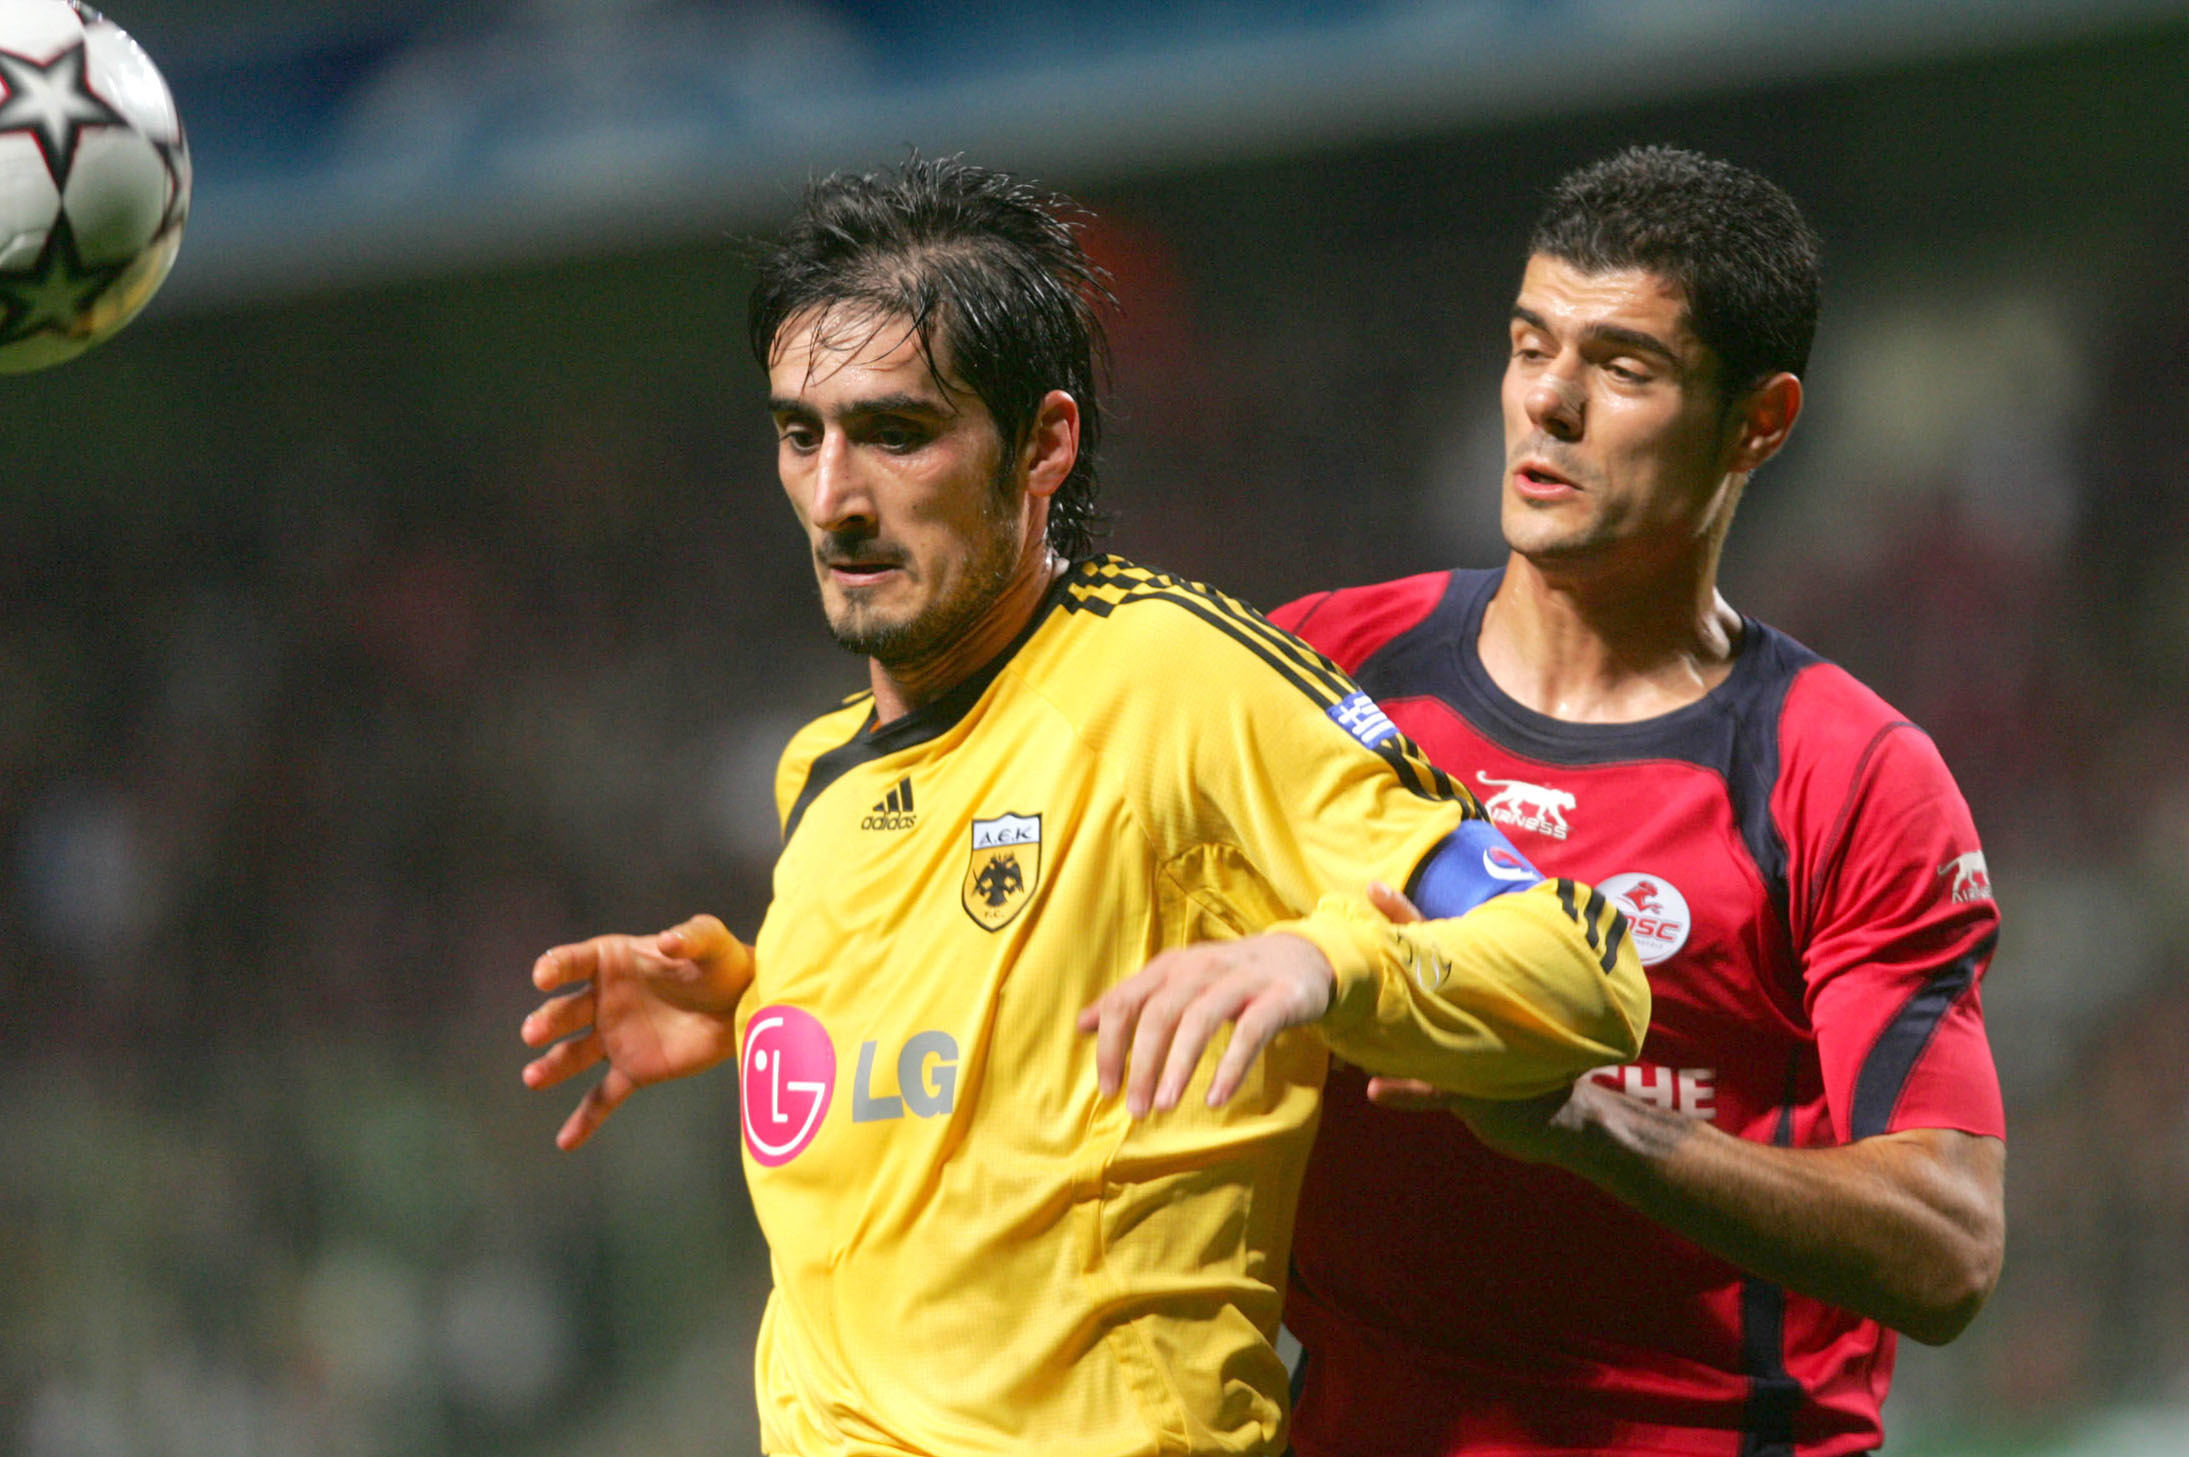 Ταυλαρίδης και Λυμπερόπουλος είναι πολύ πιθανό να είναι συμπαίκτες από τη νέα σεζόν